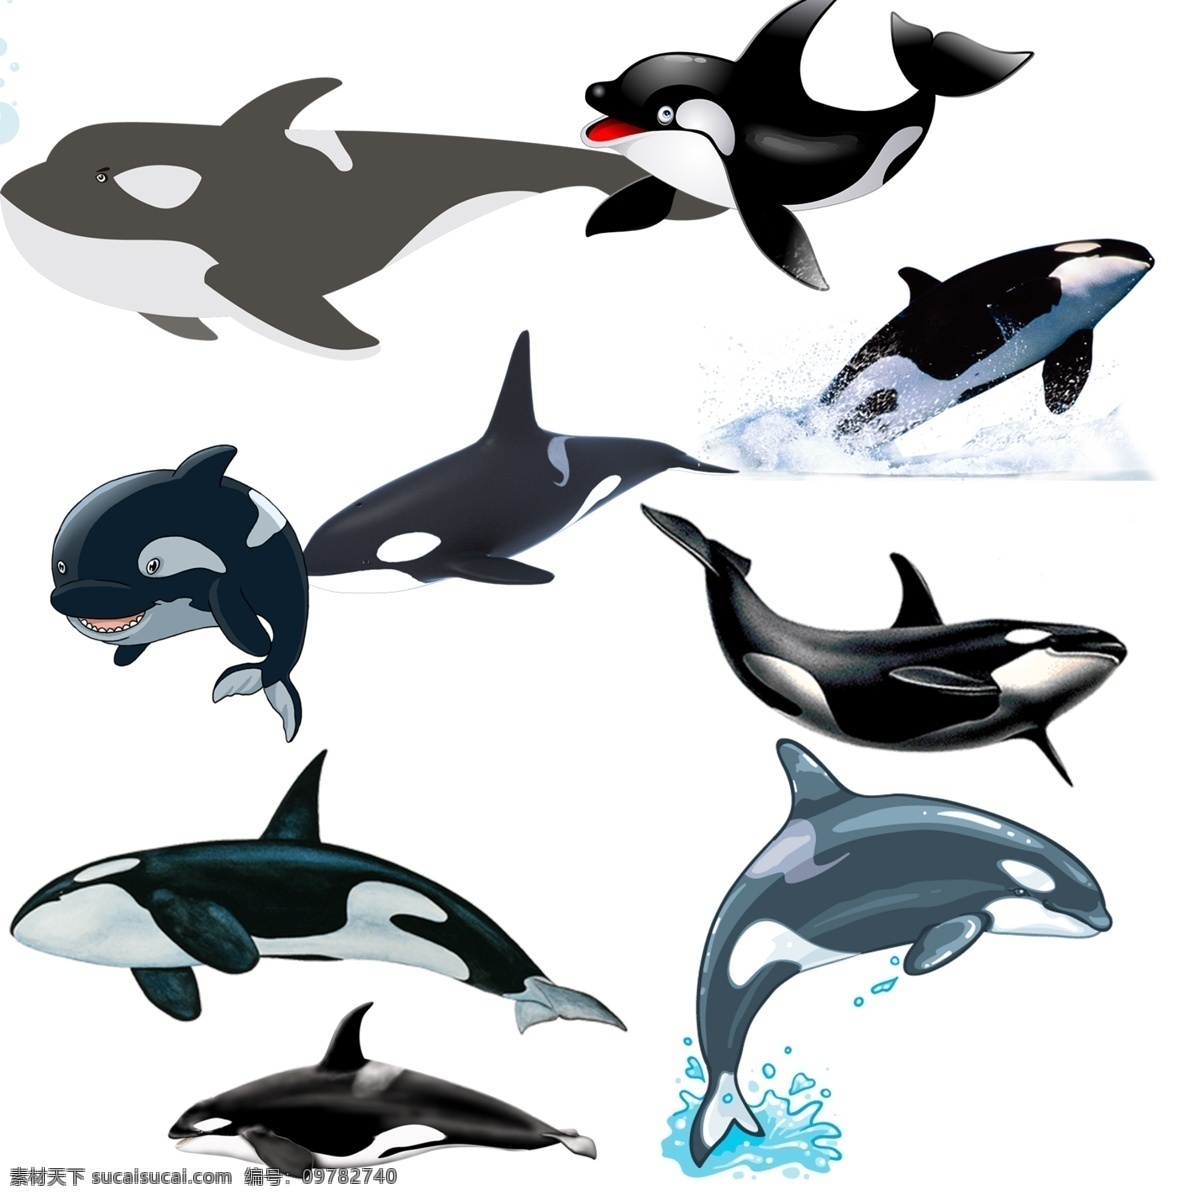 鲸鱼 免 扣 高清 素材图片 鲸鱼png 文件 鲸鱼免扣素材 鲸鱼素材 生物世界 野生动物